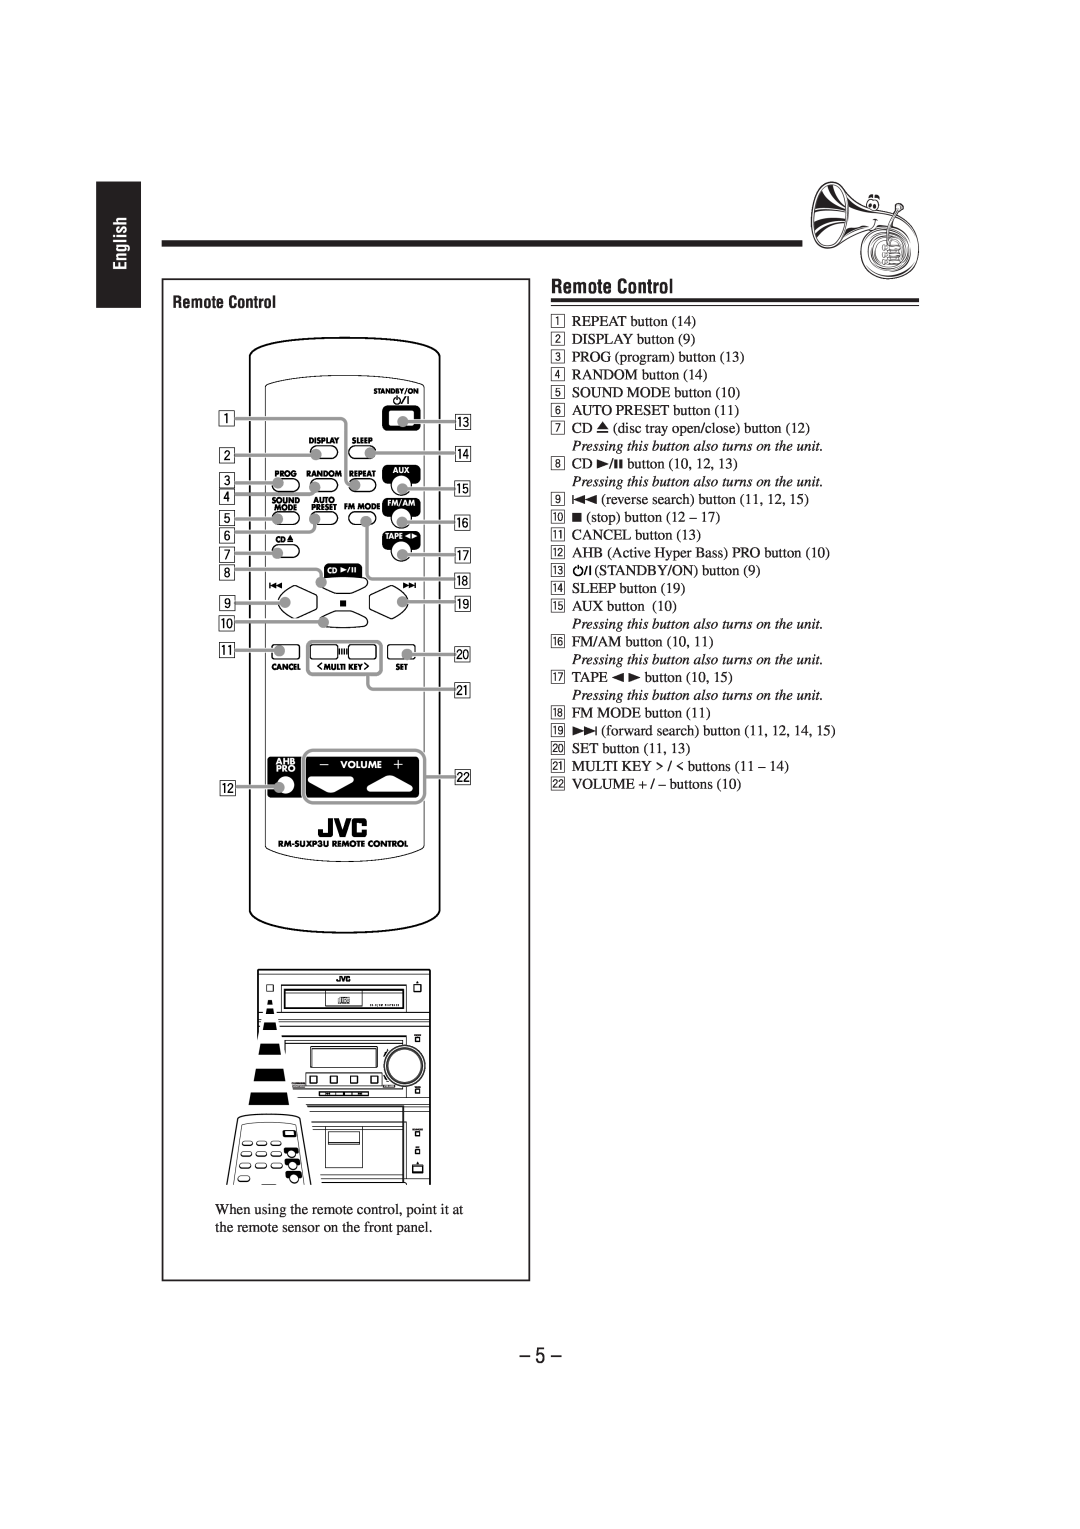 JVC UX-P3 manual Remote Control, English 